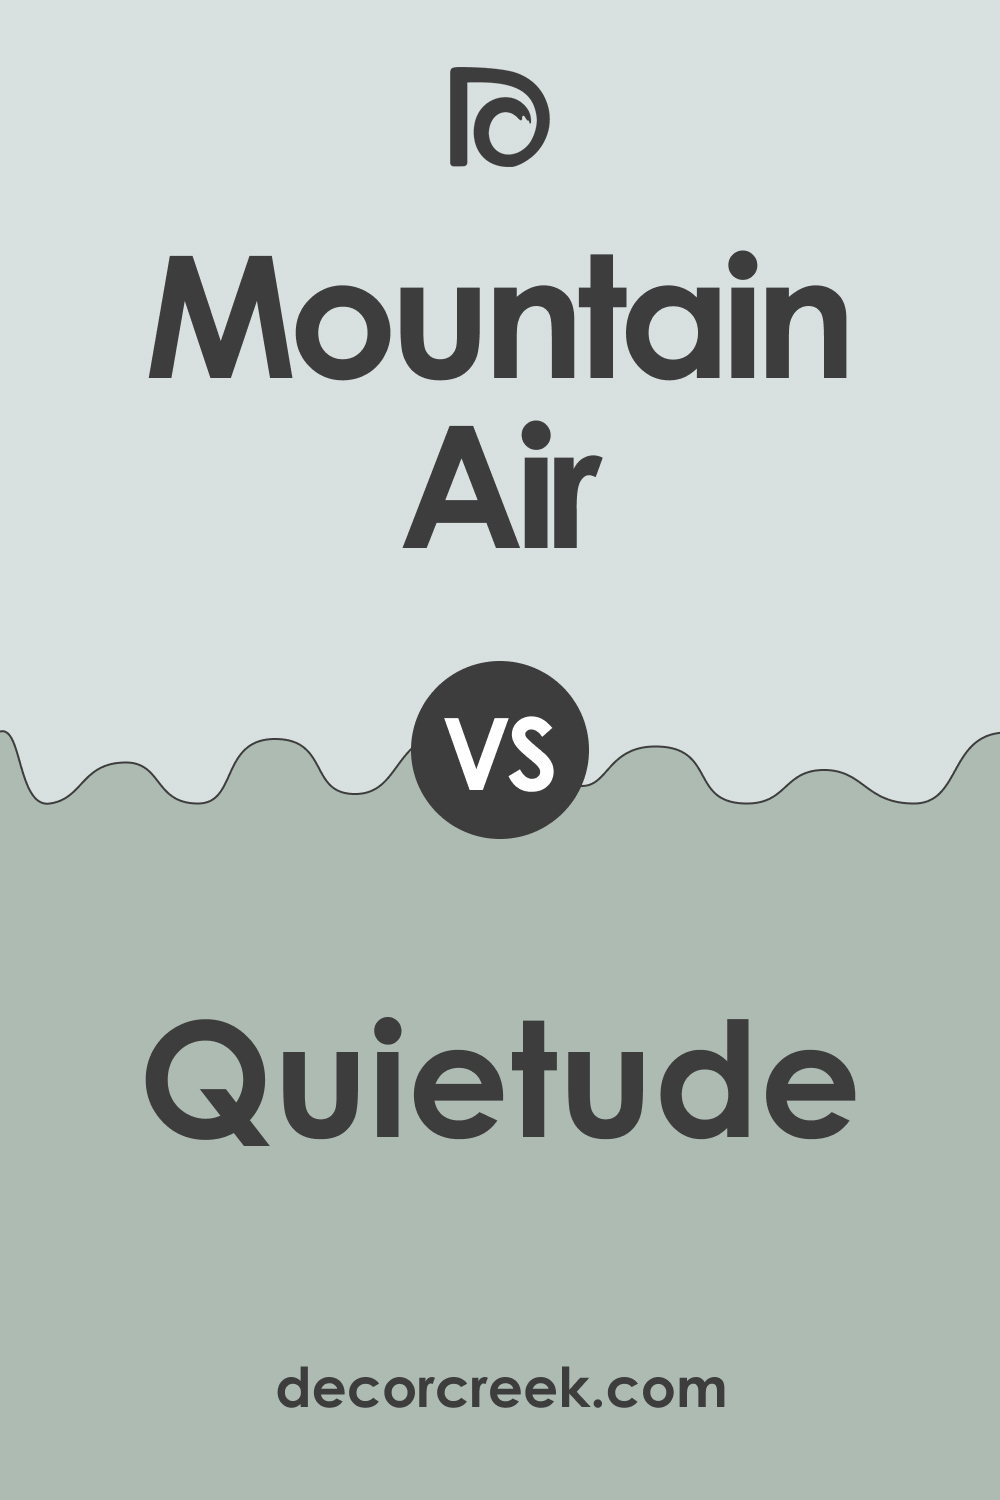 Mountain Air SW-6224 vs. Quietude SW-6212